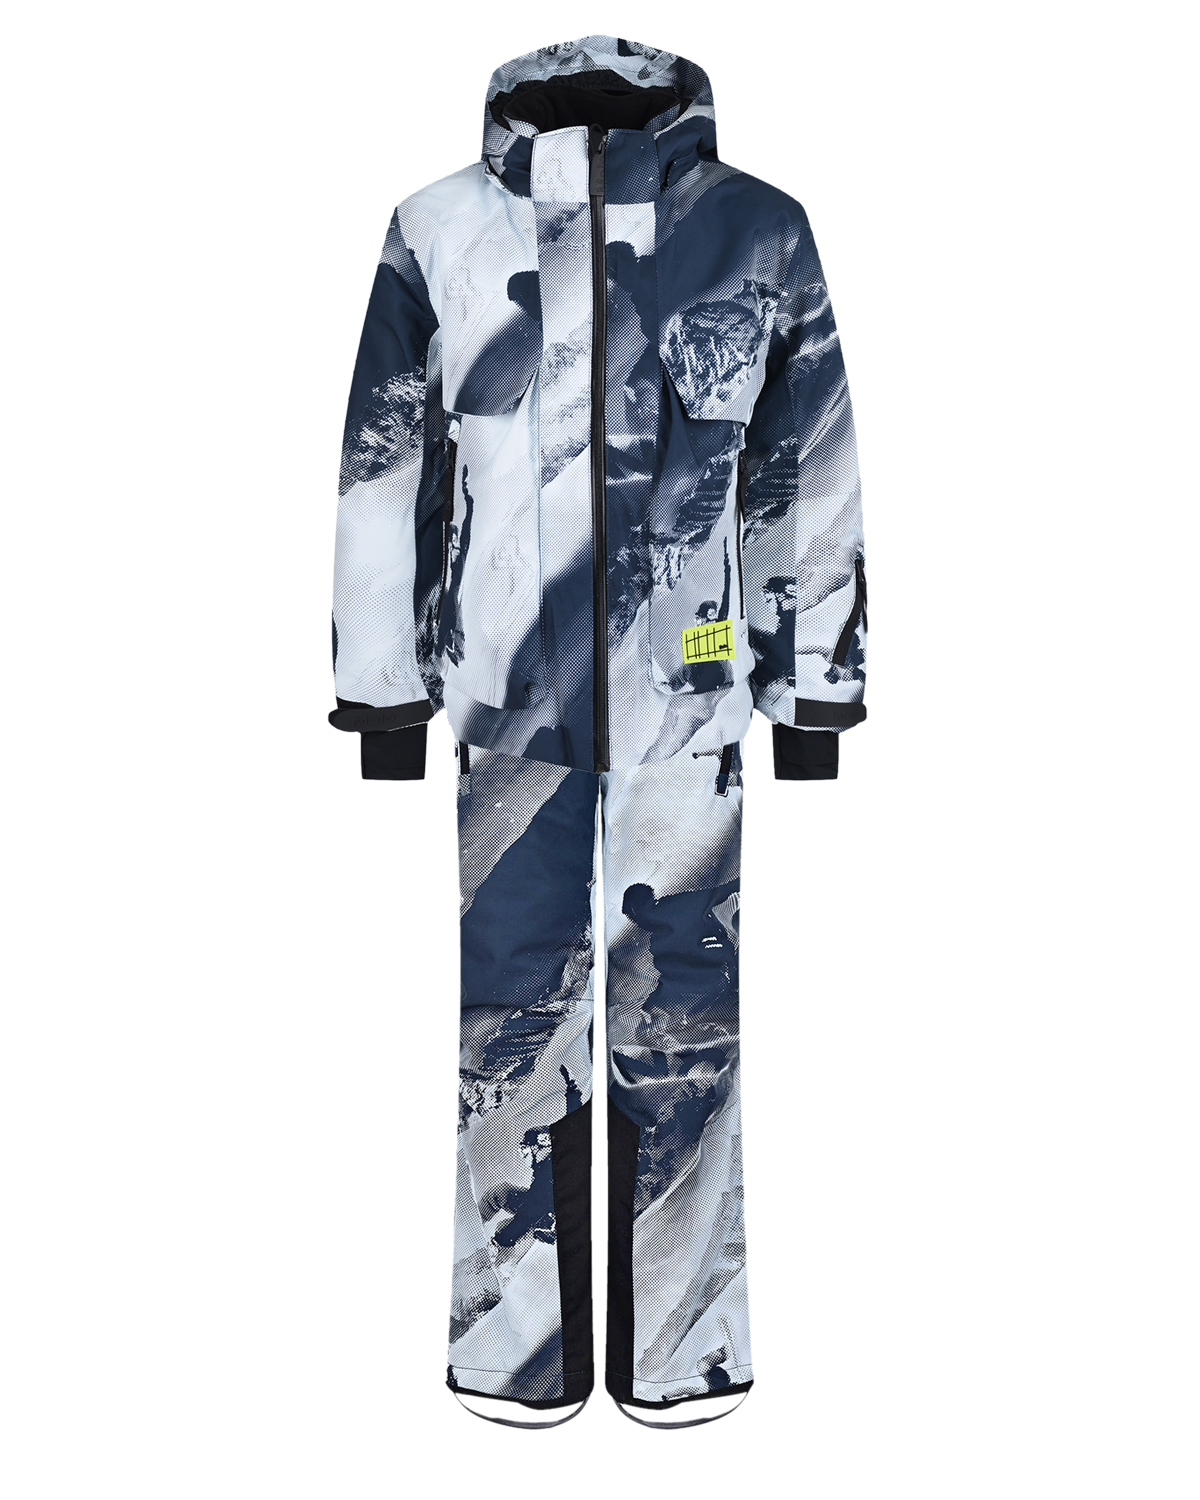 Комплект с принтом "лыжники" (куртка, брюки, подтяжки) Molo детский, размер 140, цвет нет цвета